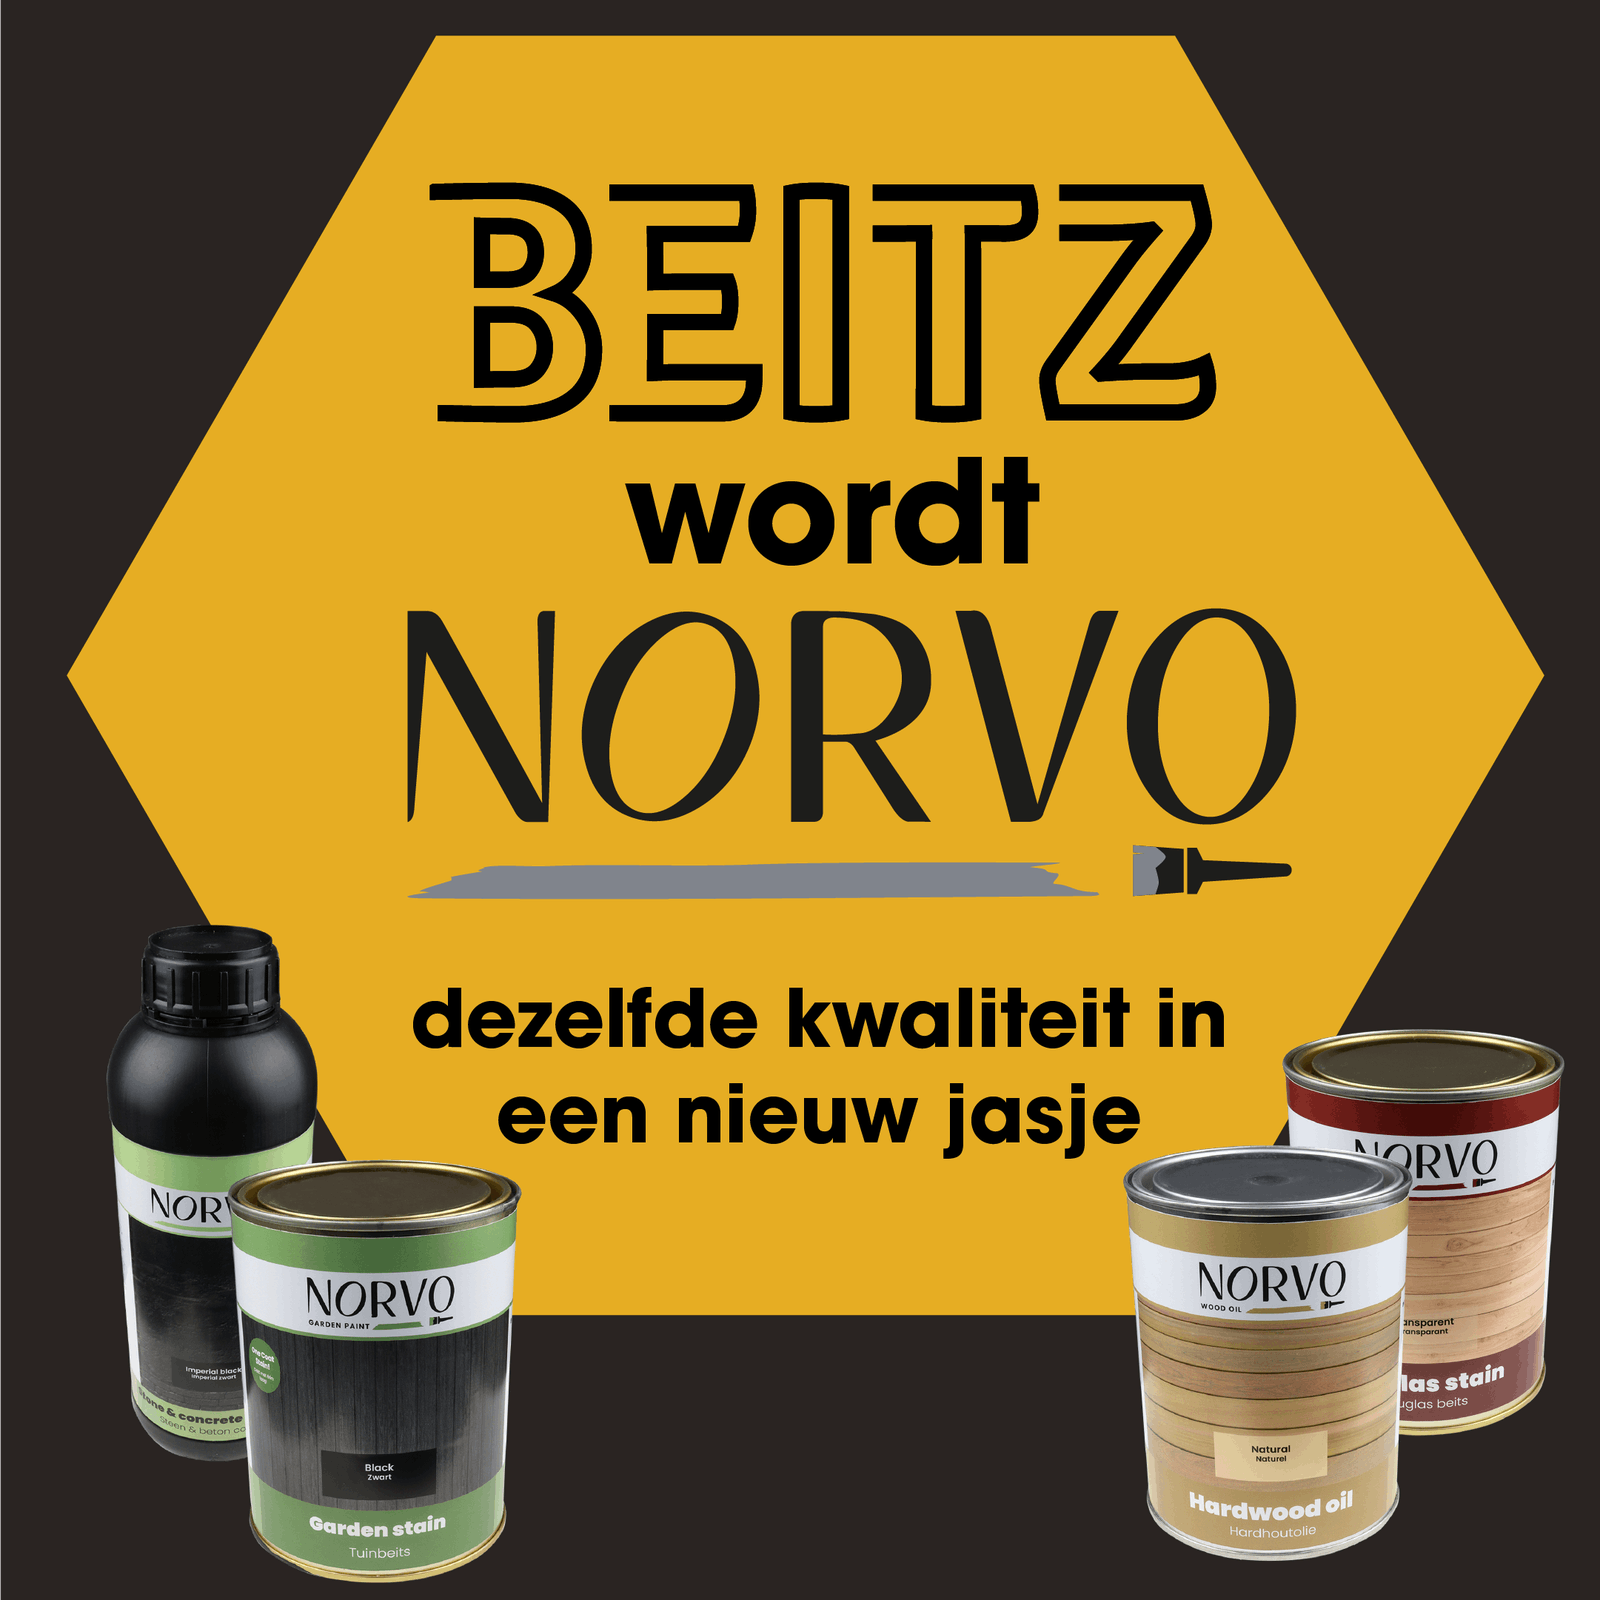 Beitz wordt Norvo!